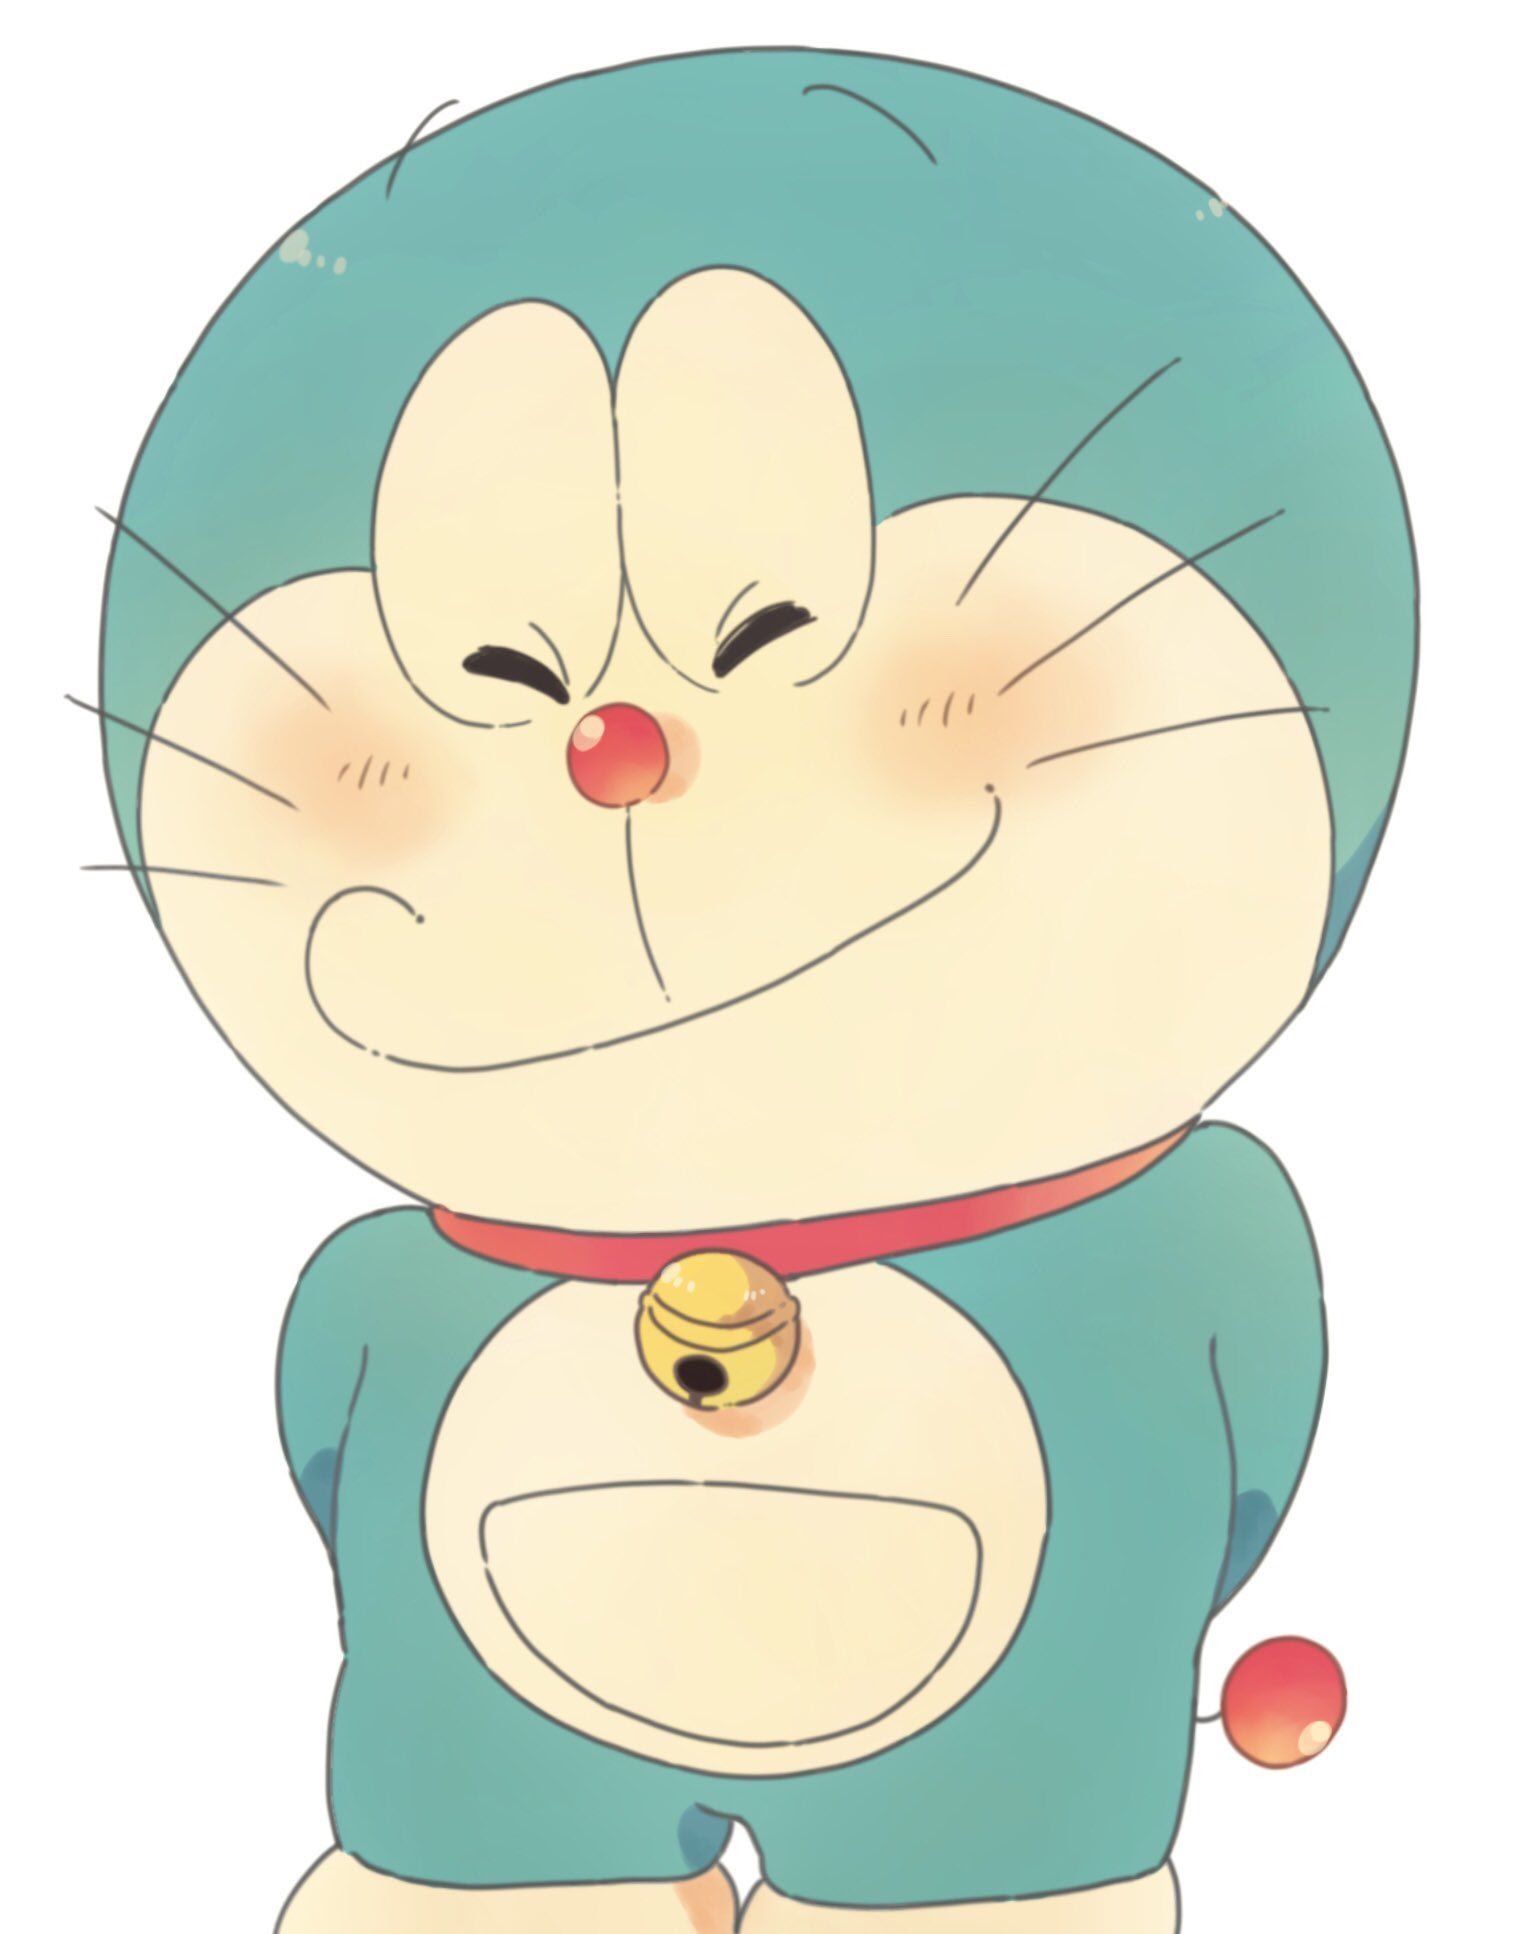 Doraemon: Hãy khám phá thế giới của Doraemon - chú mèo máy đáng yêu và hài hước này với những trò chơi thú vị và các phiên bản phim hoạt hình đầy tình tiết. Bạn sẽ cười nhiều và được tiếp cận với những ý tưởng sáng tạo như cánh cửa thần kỳ hay túi vô tận đầy đủ các công cụ hỗ trợ.